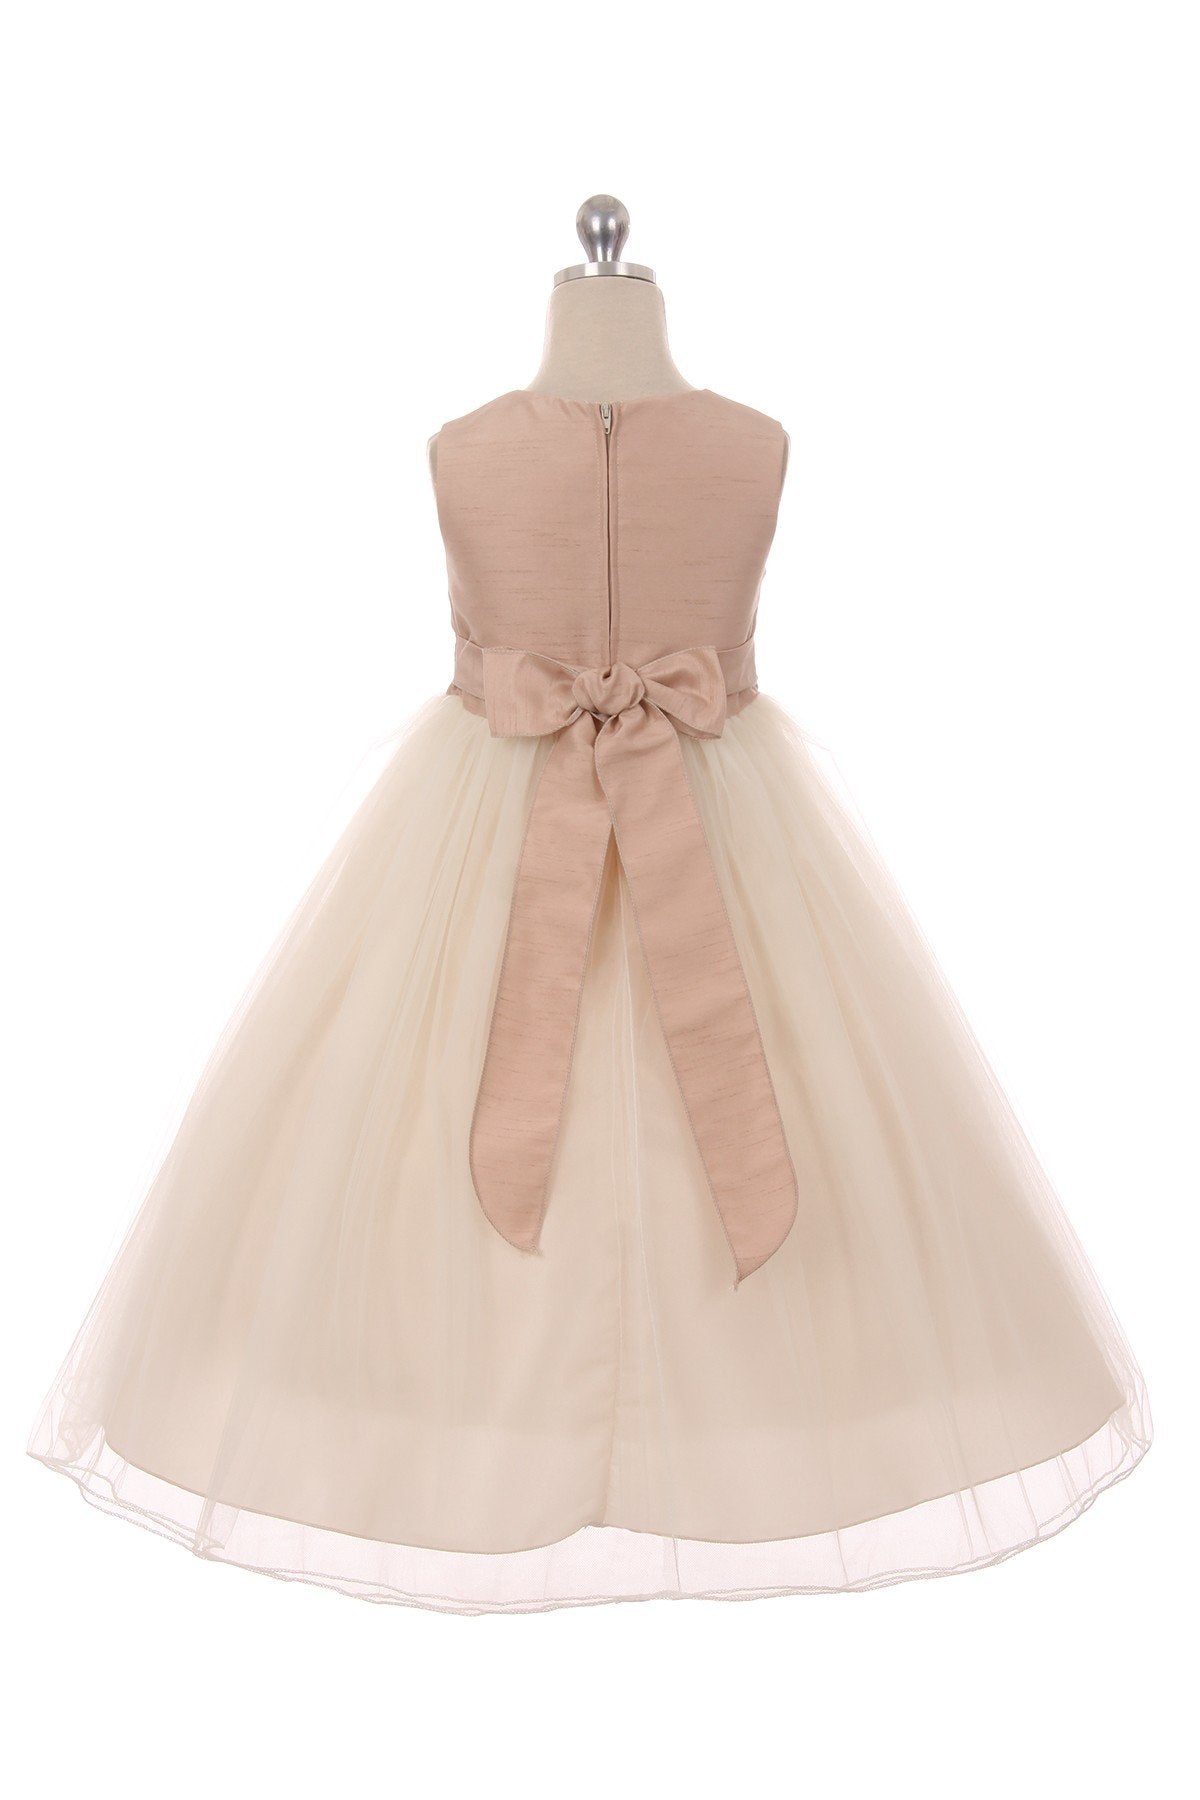 Dress - Vintage Rose Satin Tulle Dress